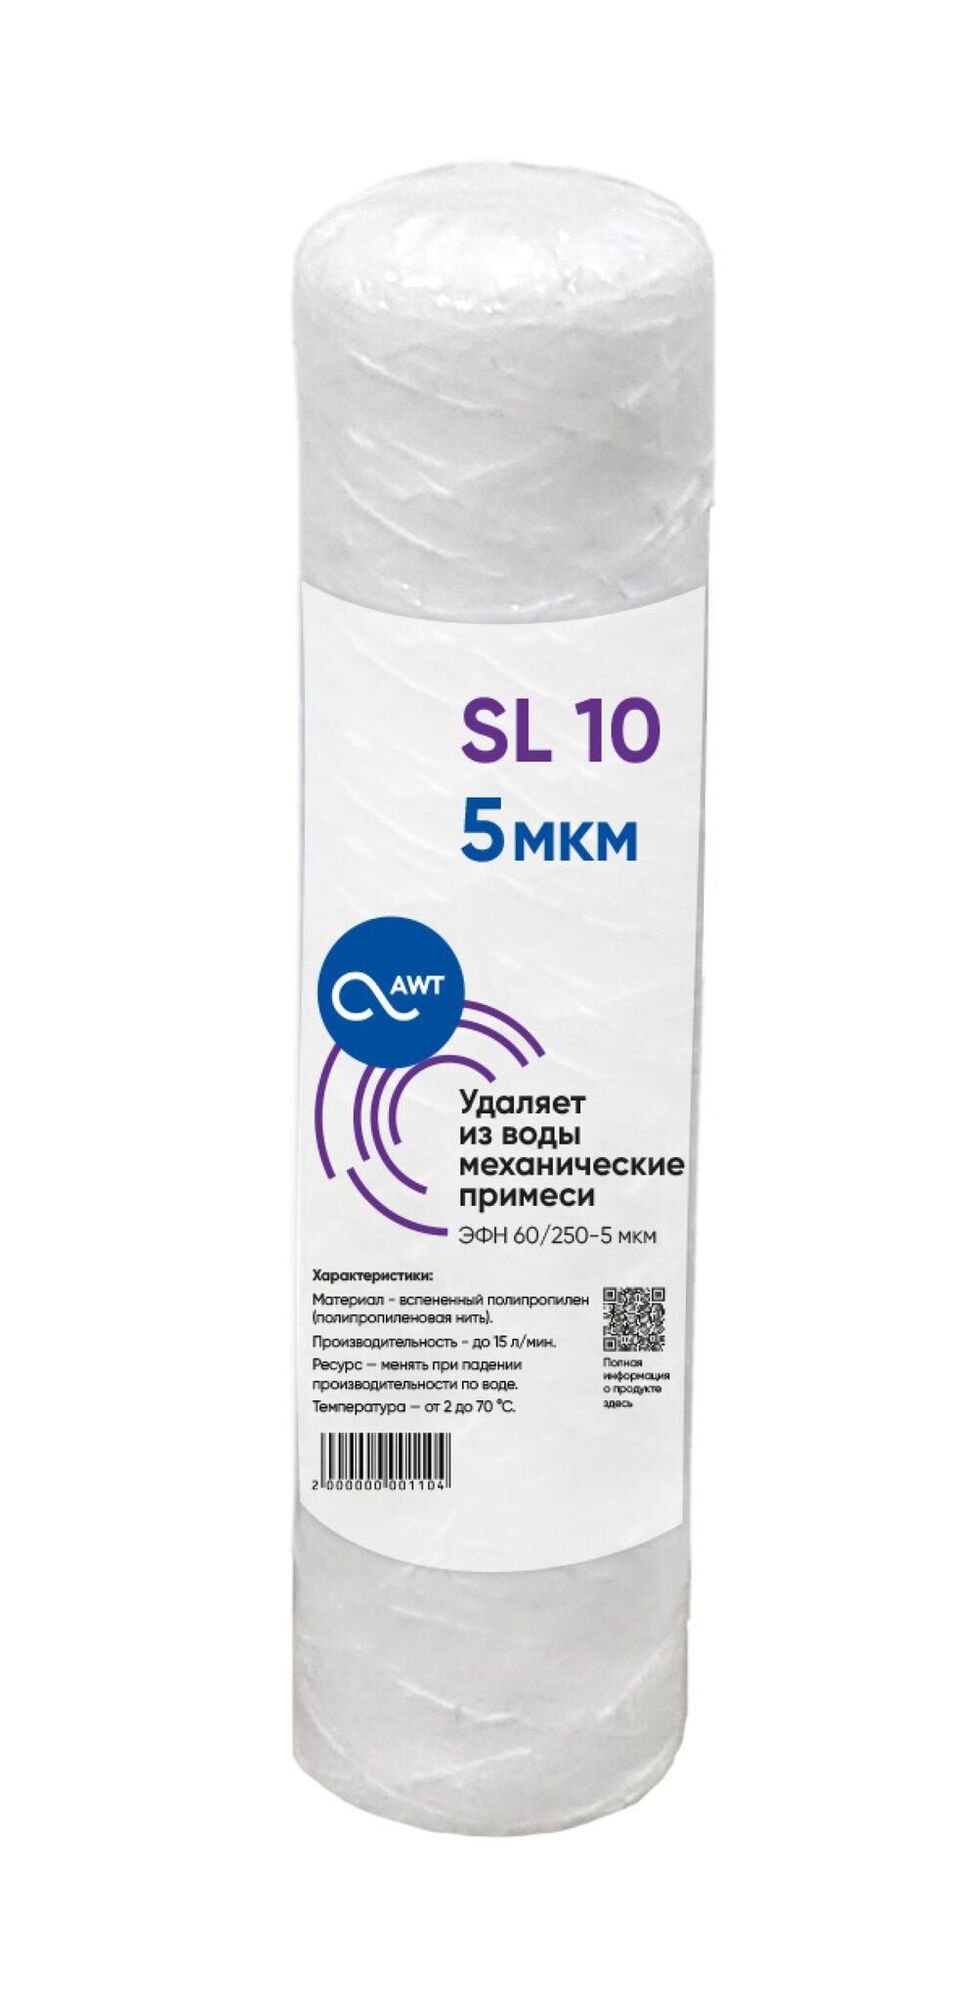 Картридж полипропилен намоточный механической очистки SL10 (Slim Line, WP, ЭФН 60/250 - 5 микрон)